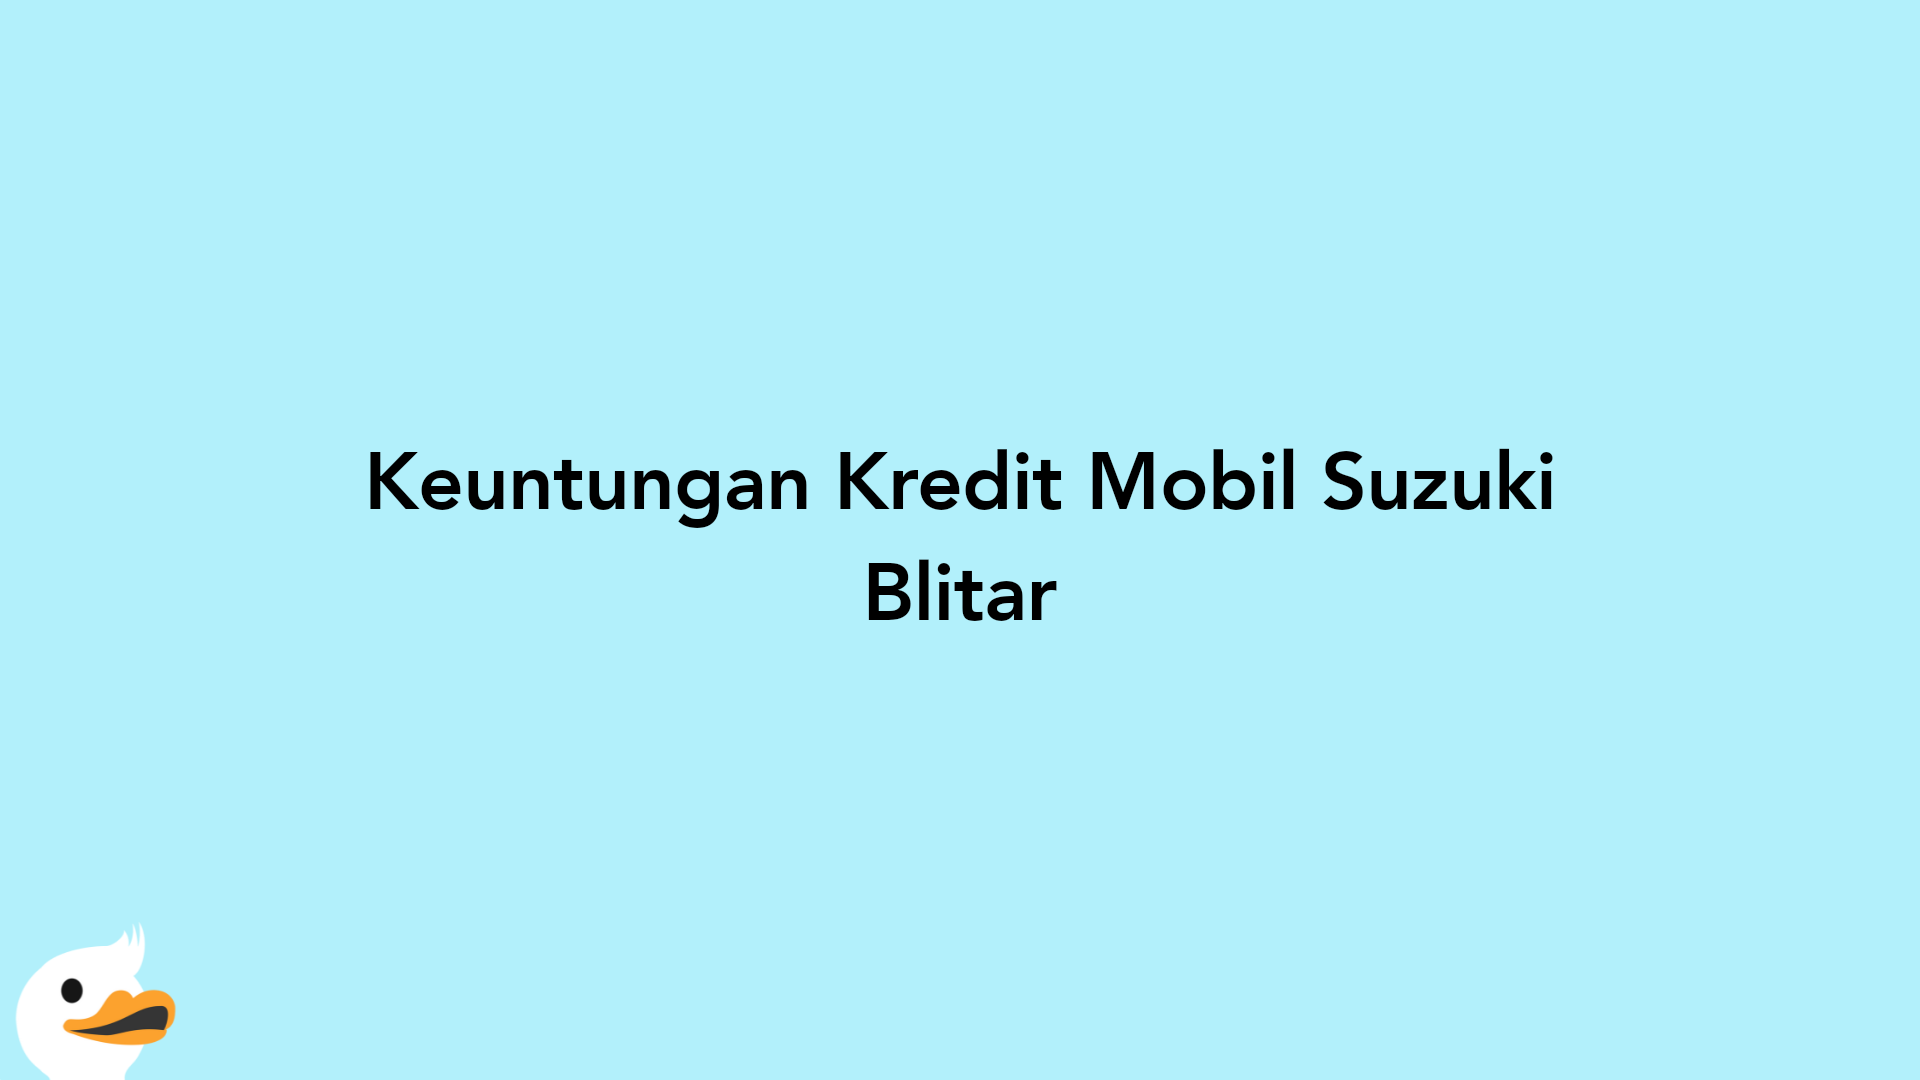 Keuntungan Kredit Mobil Suzuki Blitar